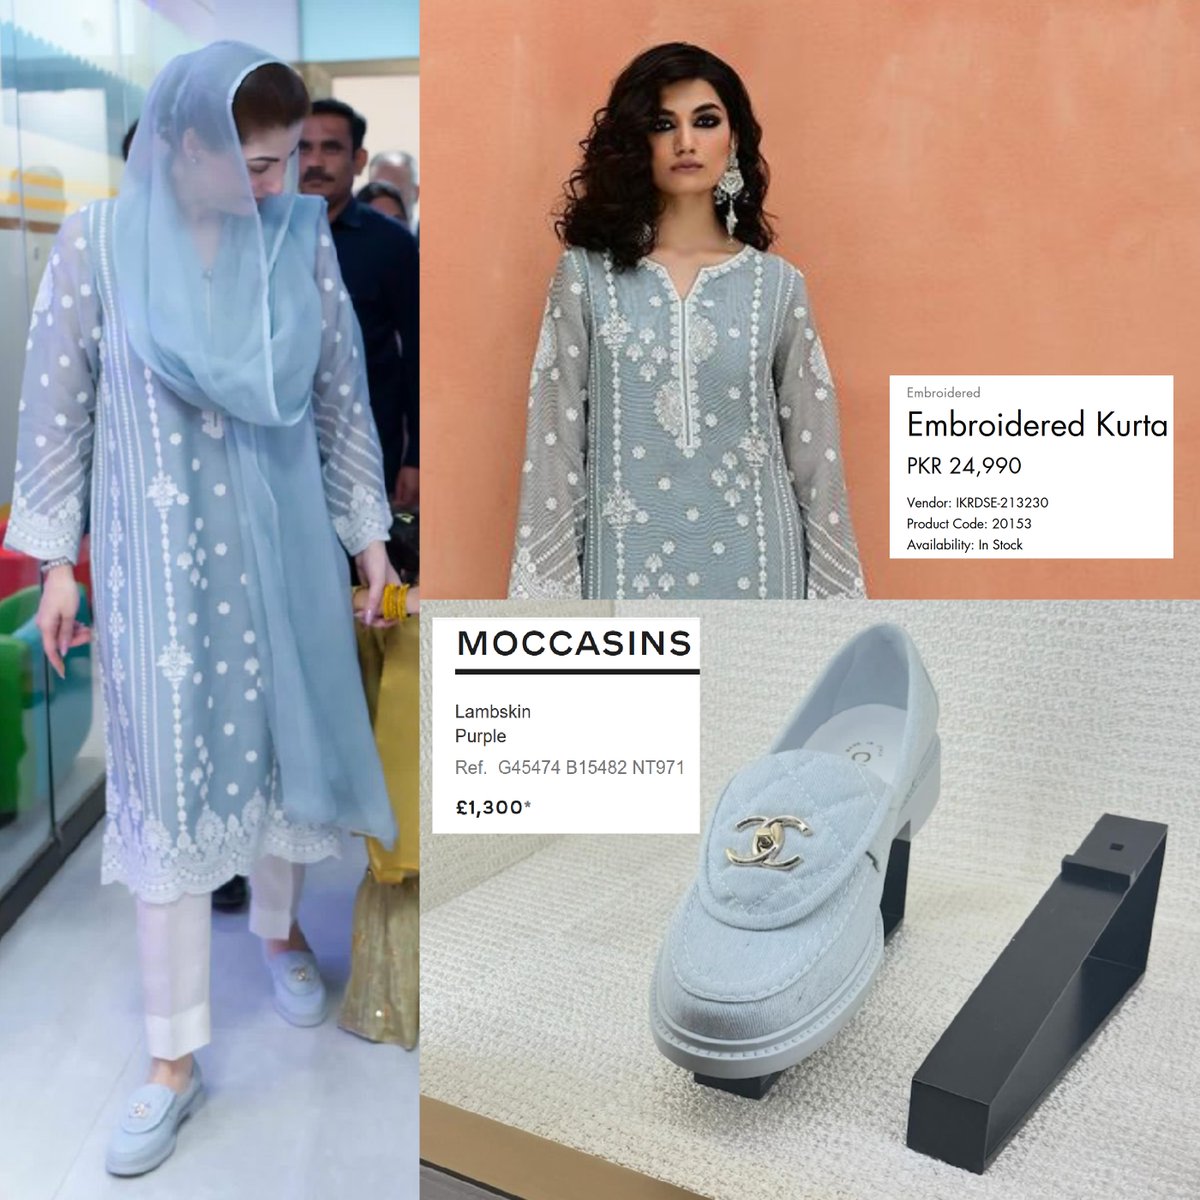 Today, On Children Hospital Lahore visit, CM Punjab @MaryamNSharif was wearing #Image ensemble worth 𝟐𝟒,𝟗𝟗𝟎/- 𝐏𝐊𝐑 along with Moccasins @CHANEL worth (£𝟏,𝟑𝟎𝟎 = 𝟒𝟓𝟐,𝟗𝟕𝟎 / - 𝐏𝐊𝐑)

#MaryamNawaz #PMLN #CMPunjab